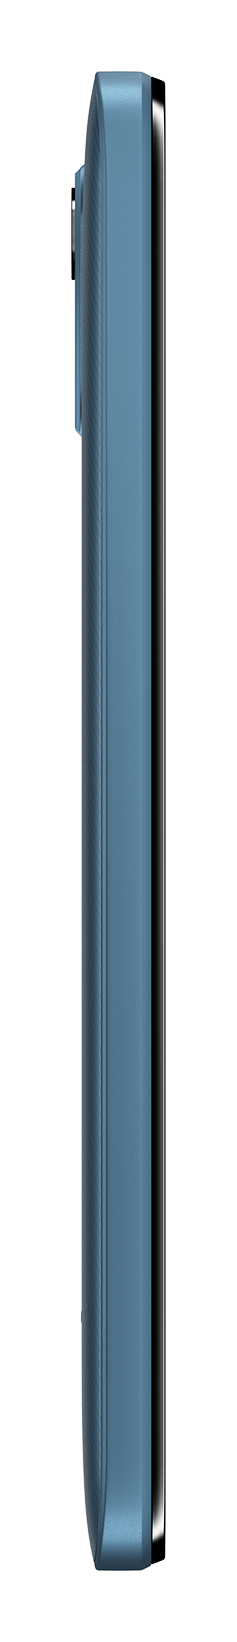 Nokia C12 blue left side